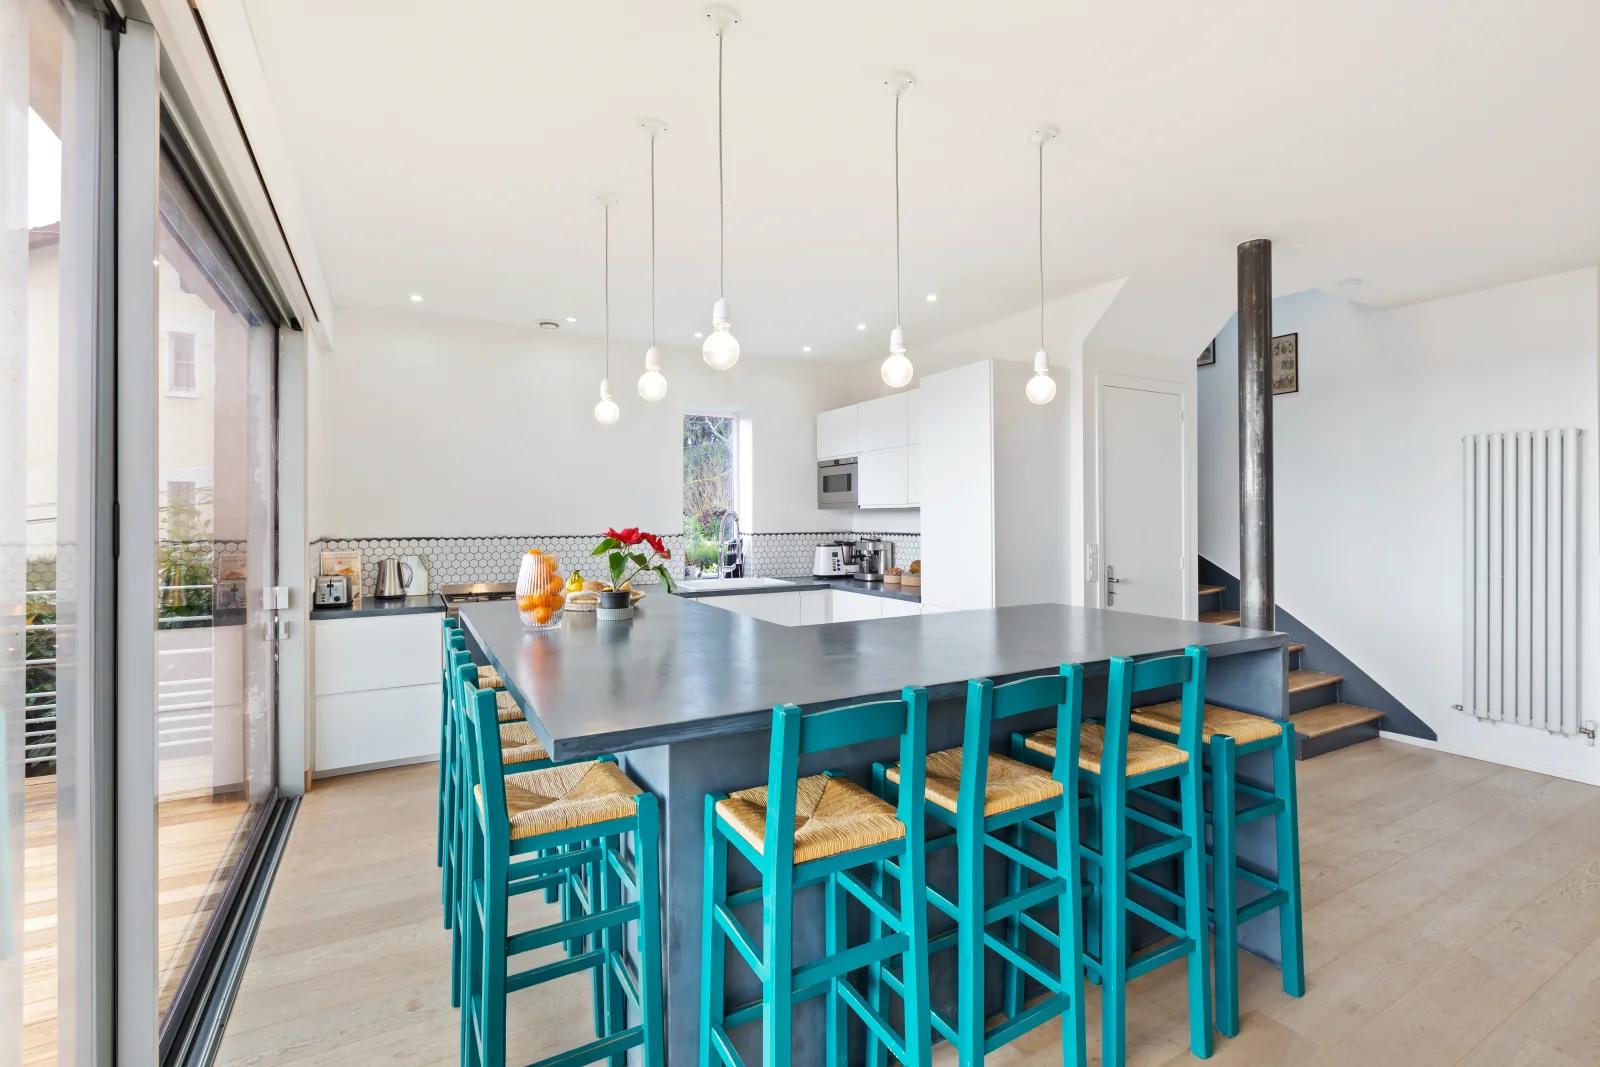 Kitchen dentro 100 m² de espacio verde para relajarse - 1